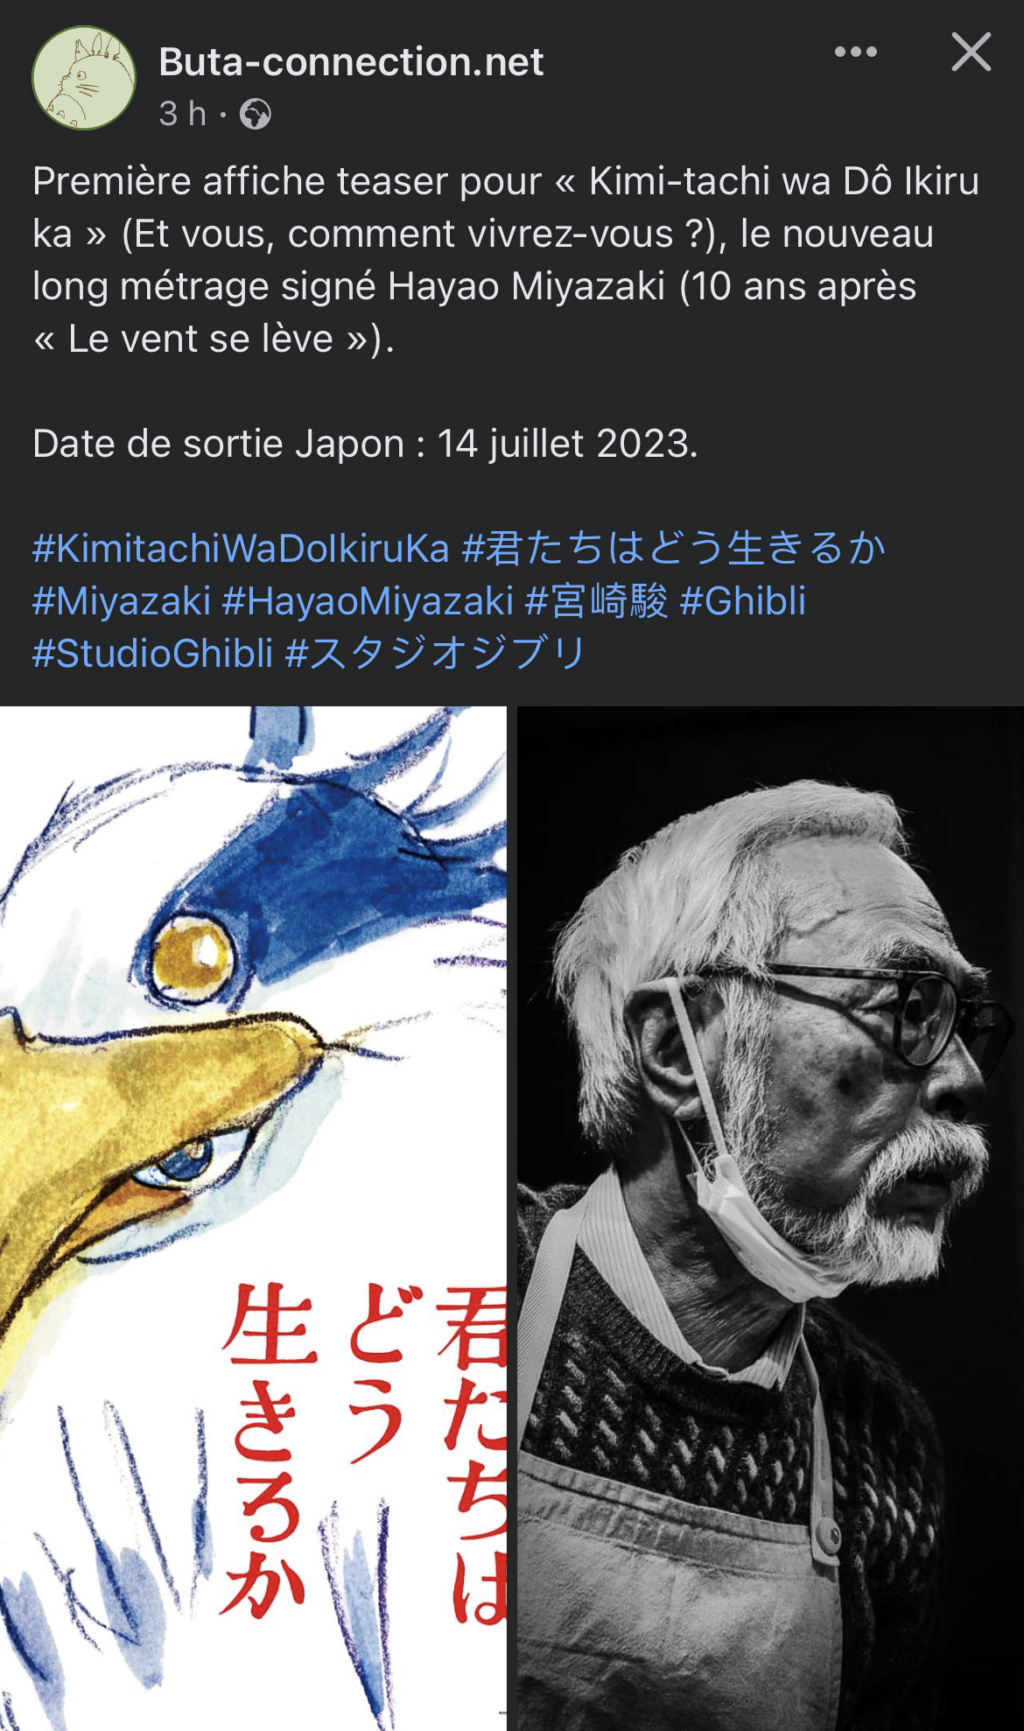 Le nouveau film de Hayao Miyazaki, pourrait sortir à l'été 2023 au Japon. 2cc70110